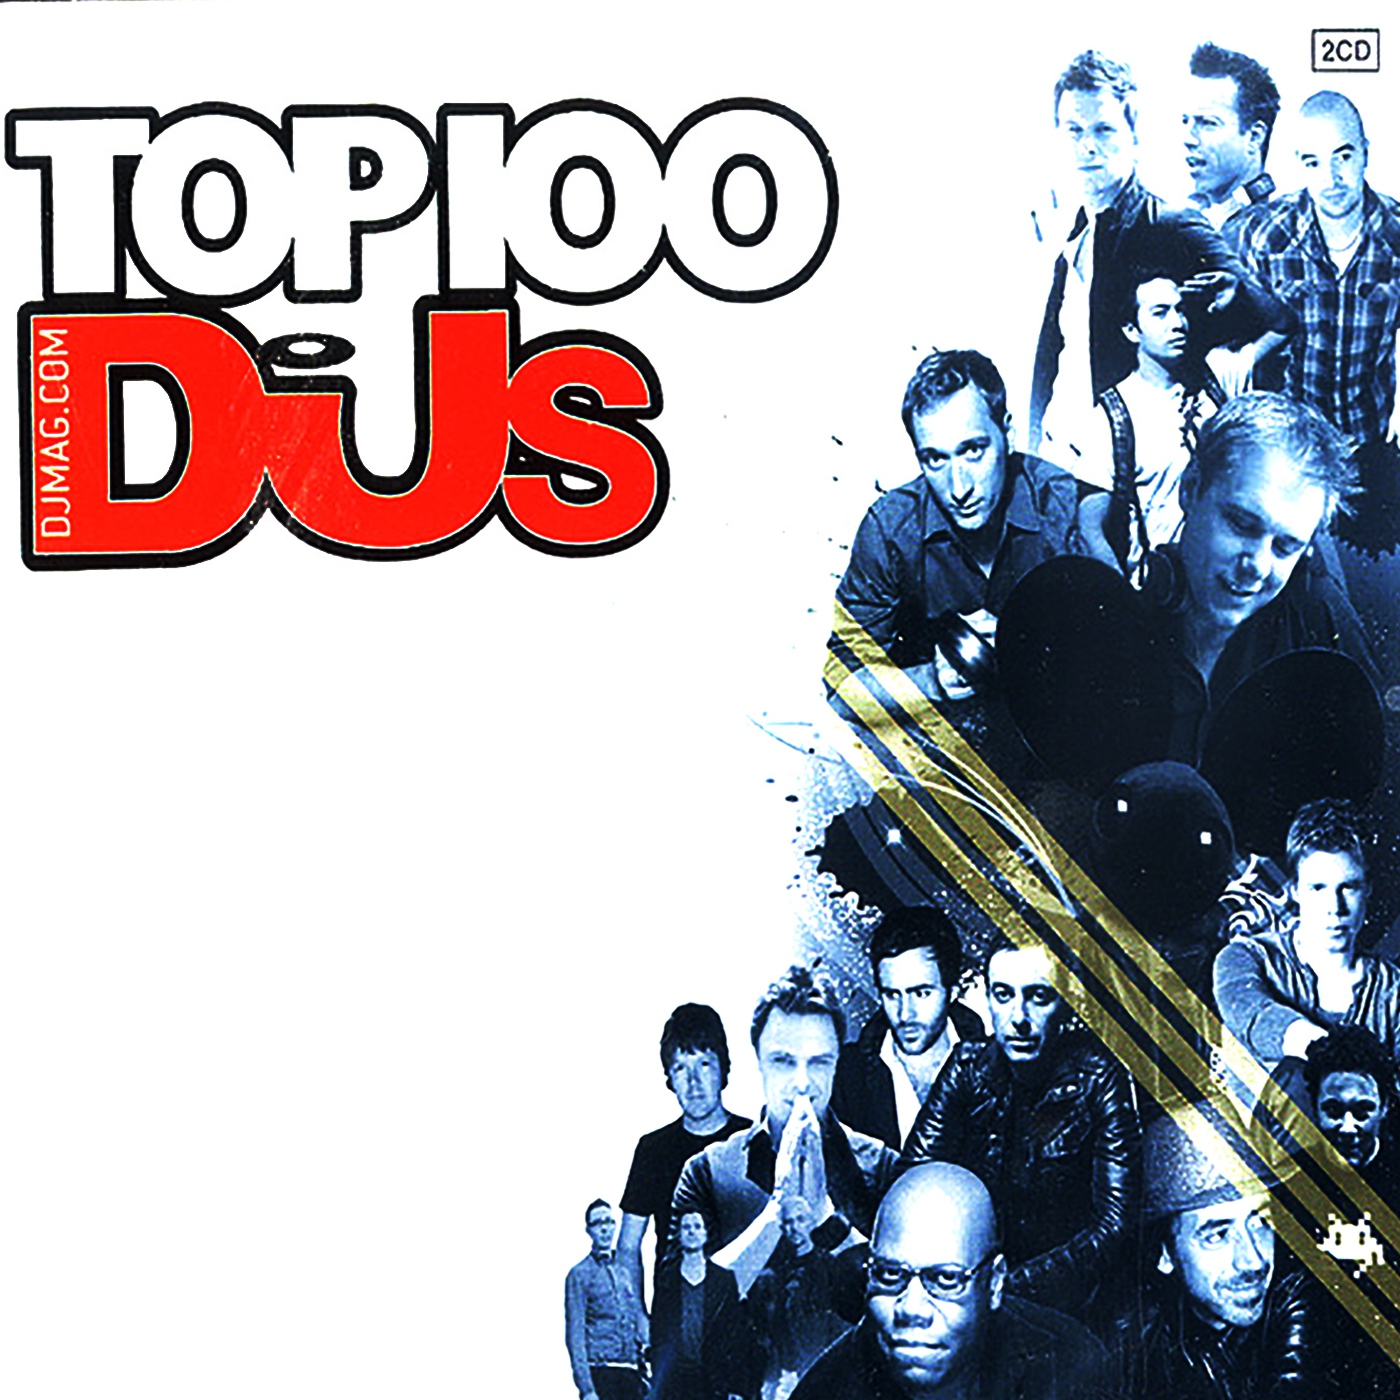 DJ Mag Top 100 DJs 2CD (CLDM2009096) CD